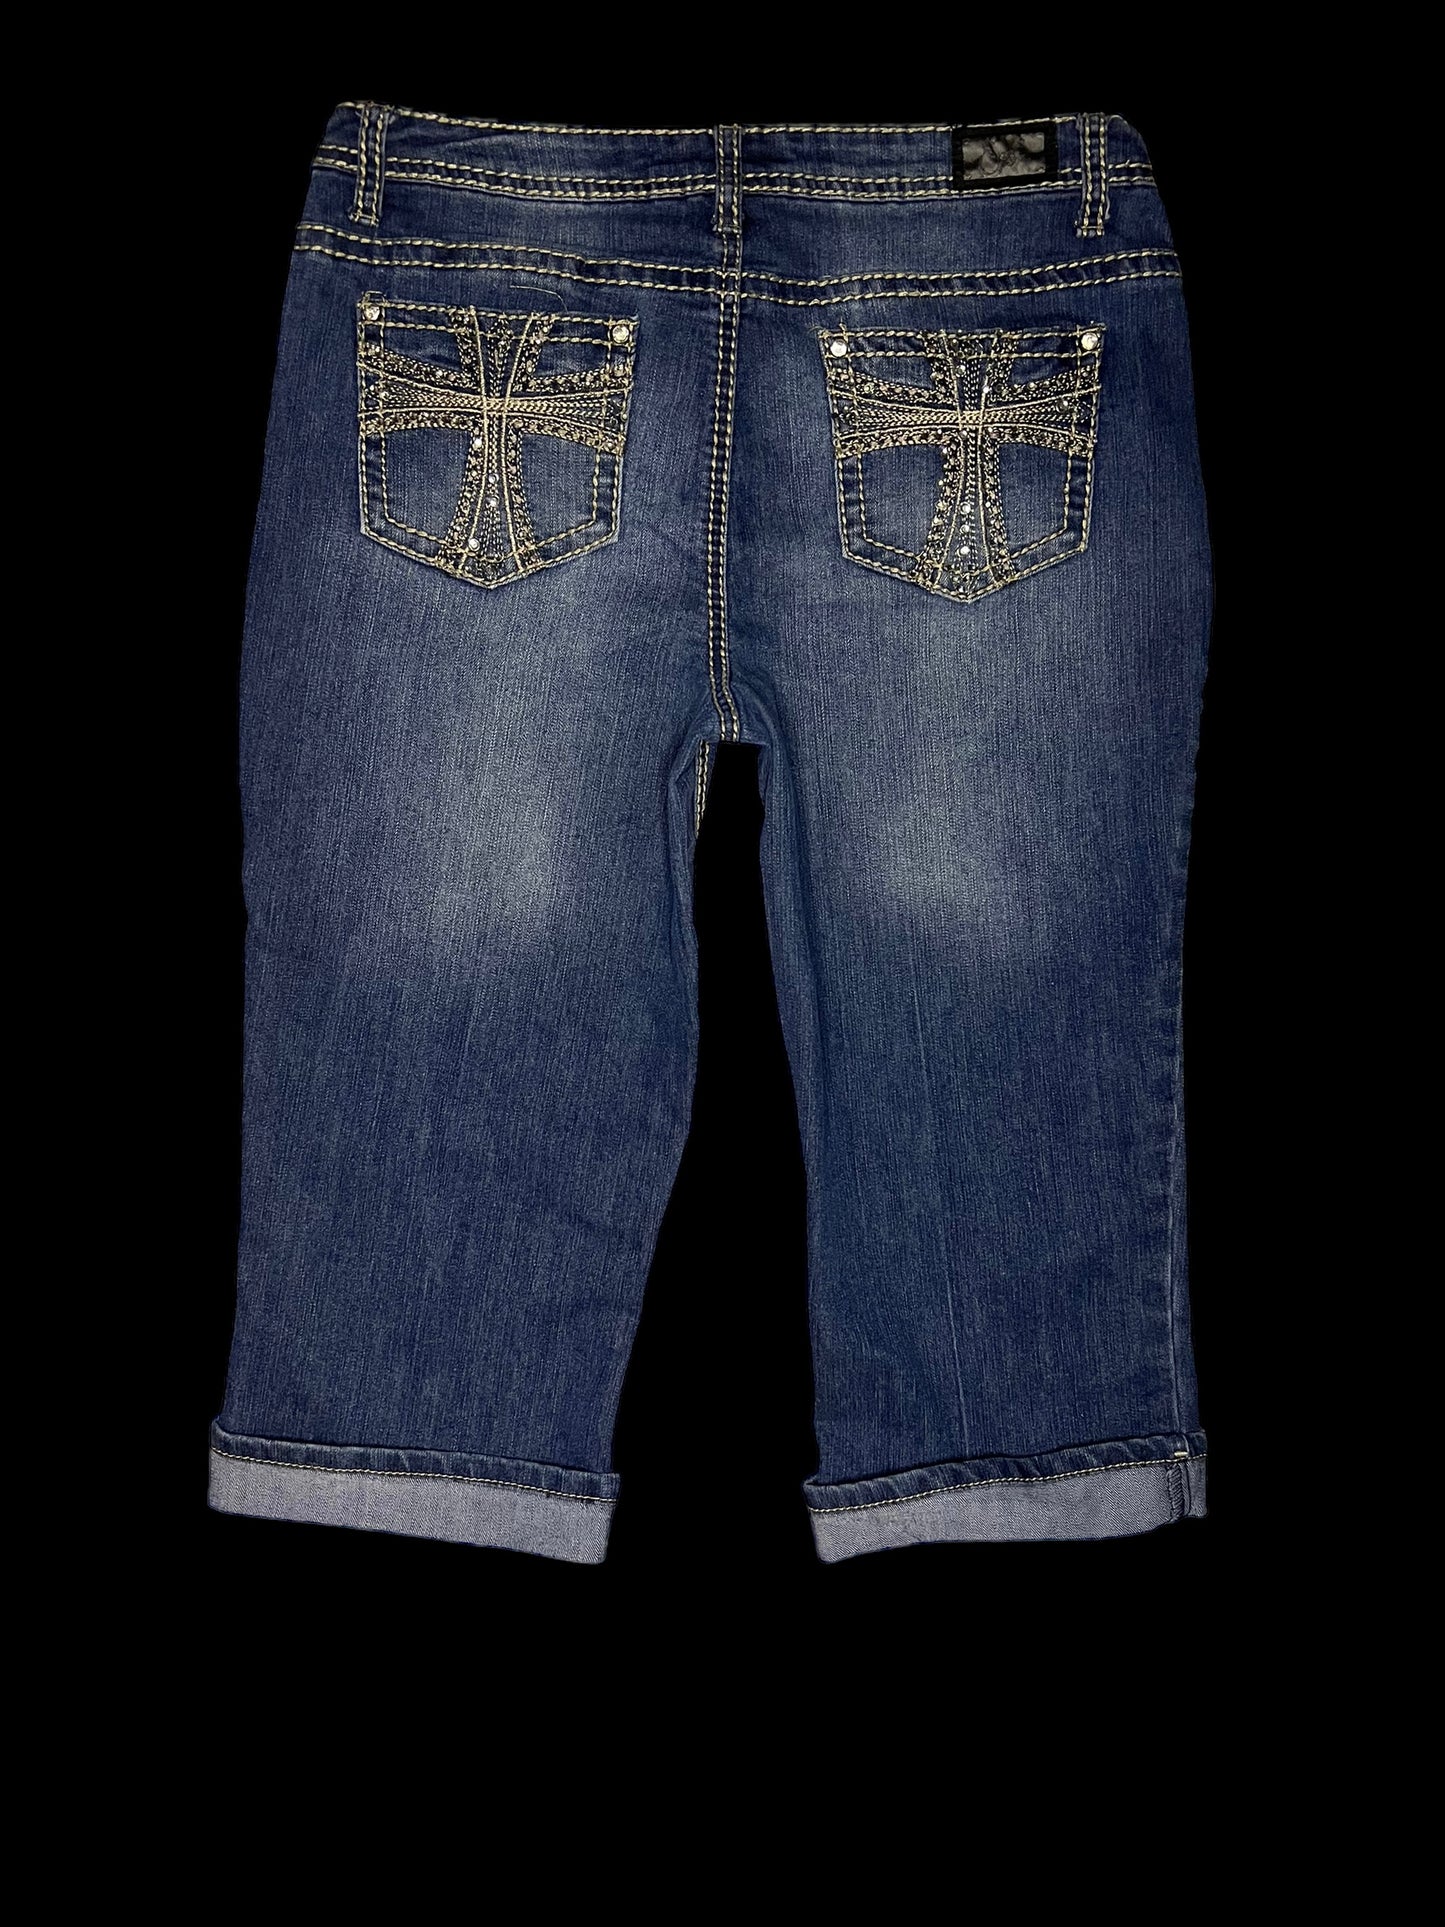 Embellished capris jeans